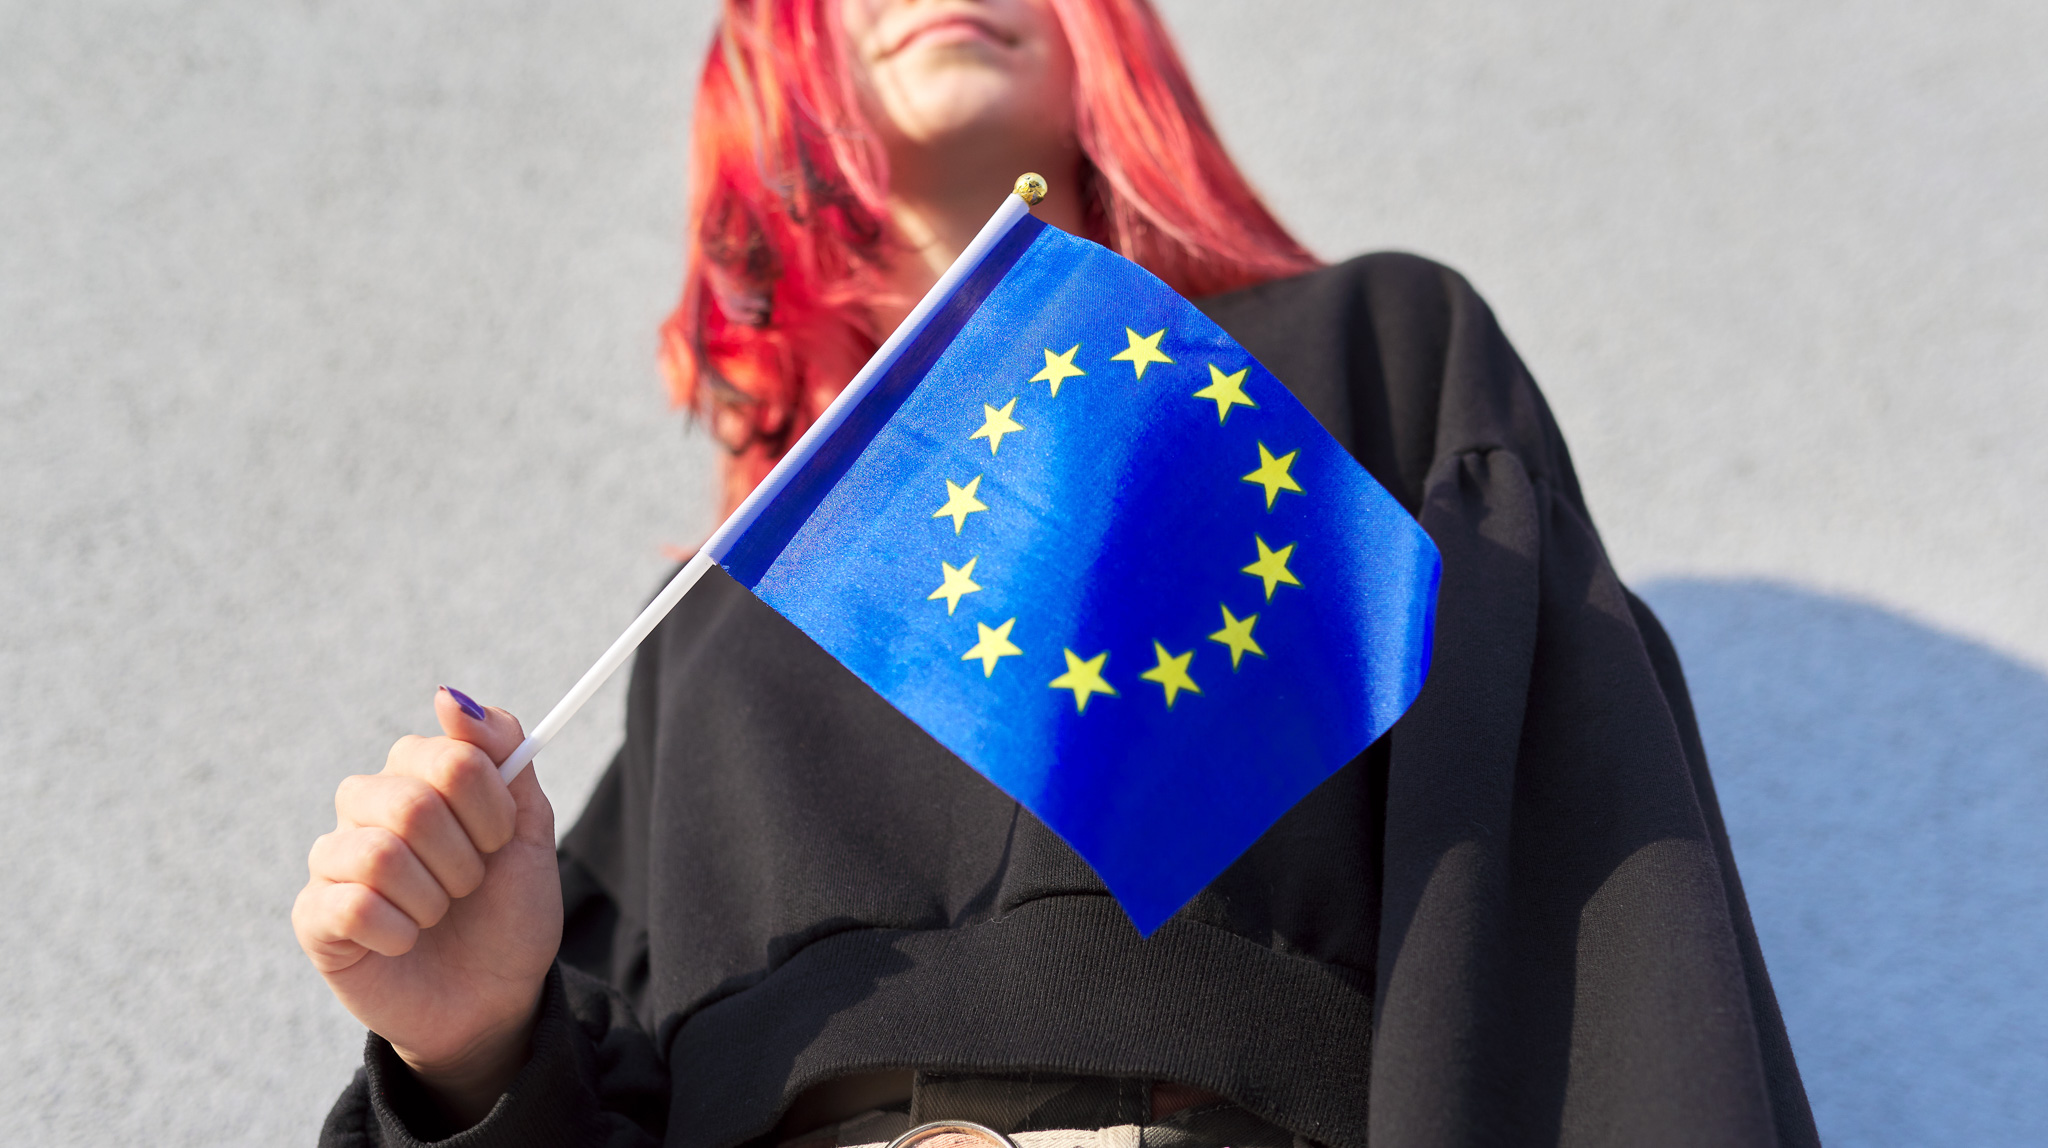 Eine junge Frau, deren Gesicht nicht erkennbar ist, hält eine kleine Europaflagge in der Hand. Foto: Valerii Honcharuk via Getty Images